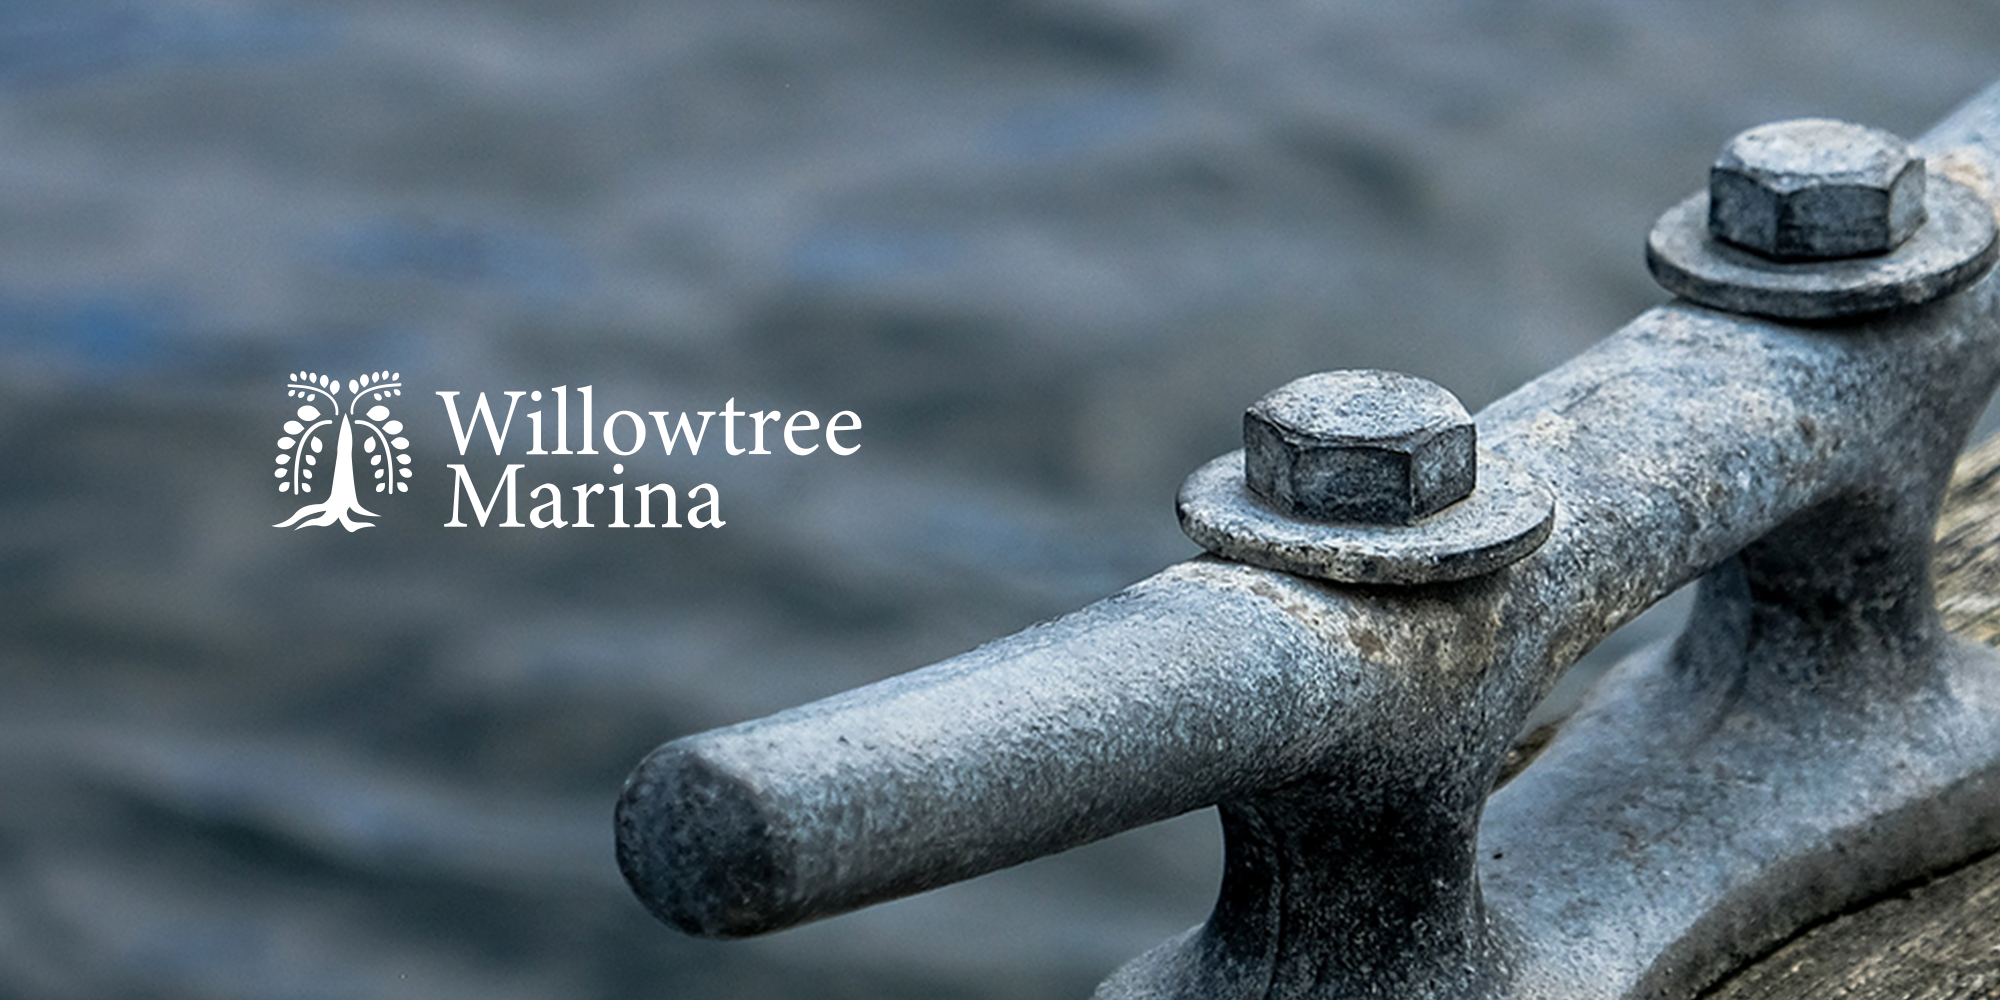 Willowtree Marina